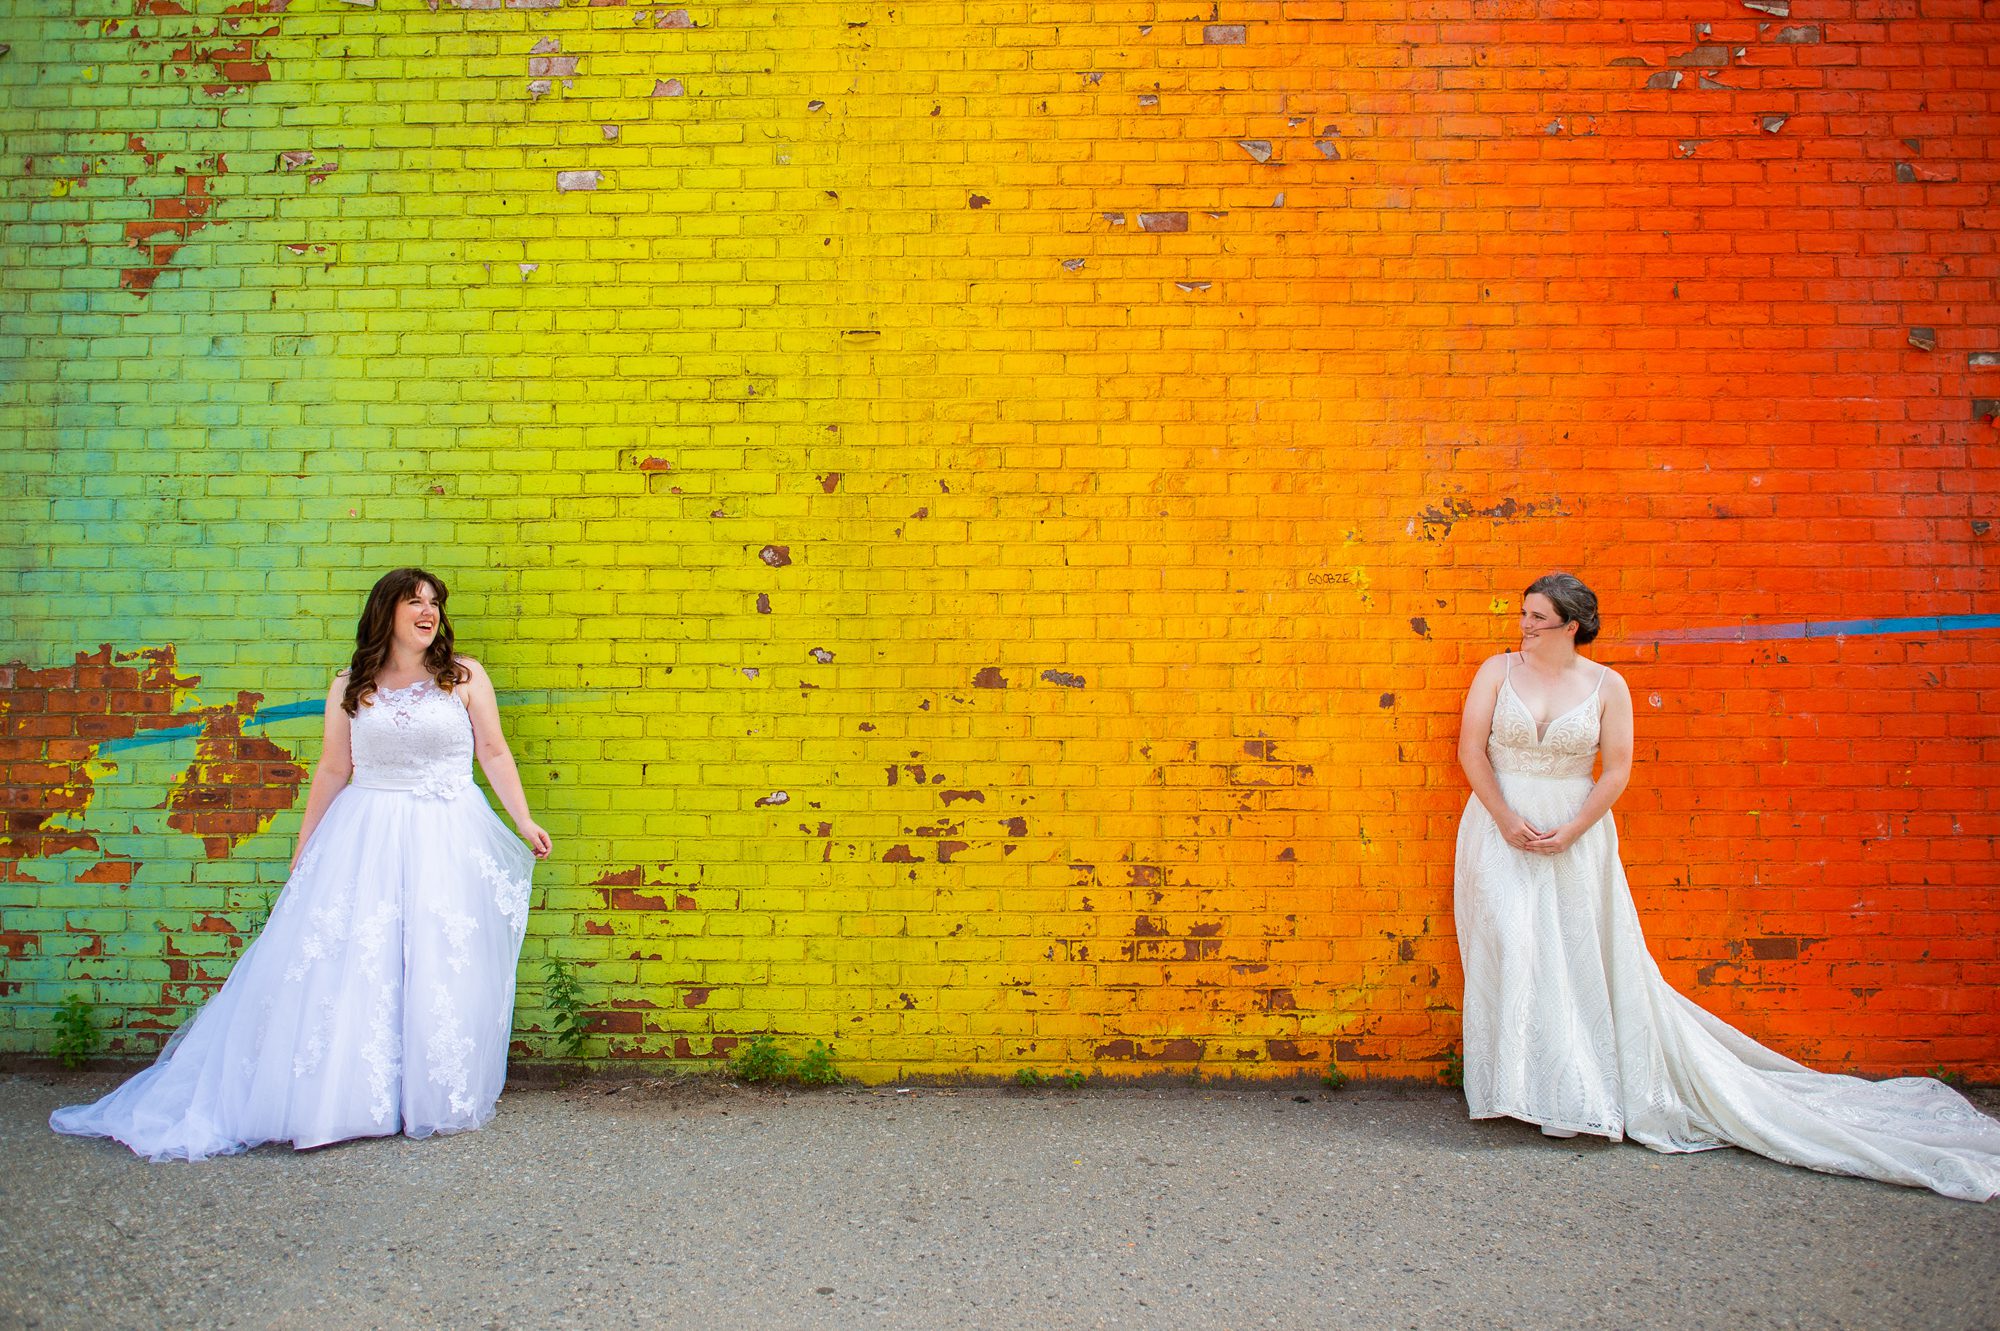 Rainbow Wall Dumbo Brooklyn Wedding Photos 